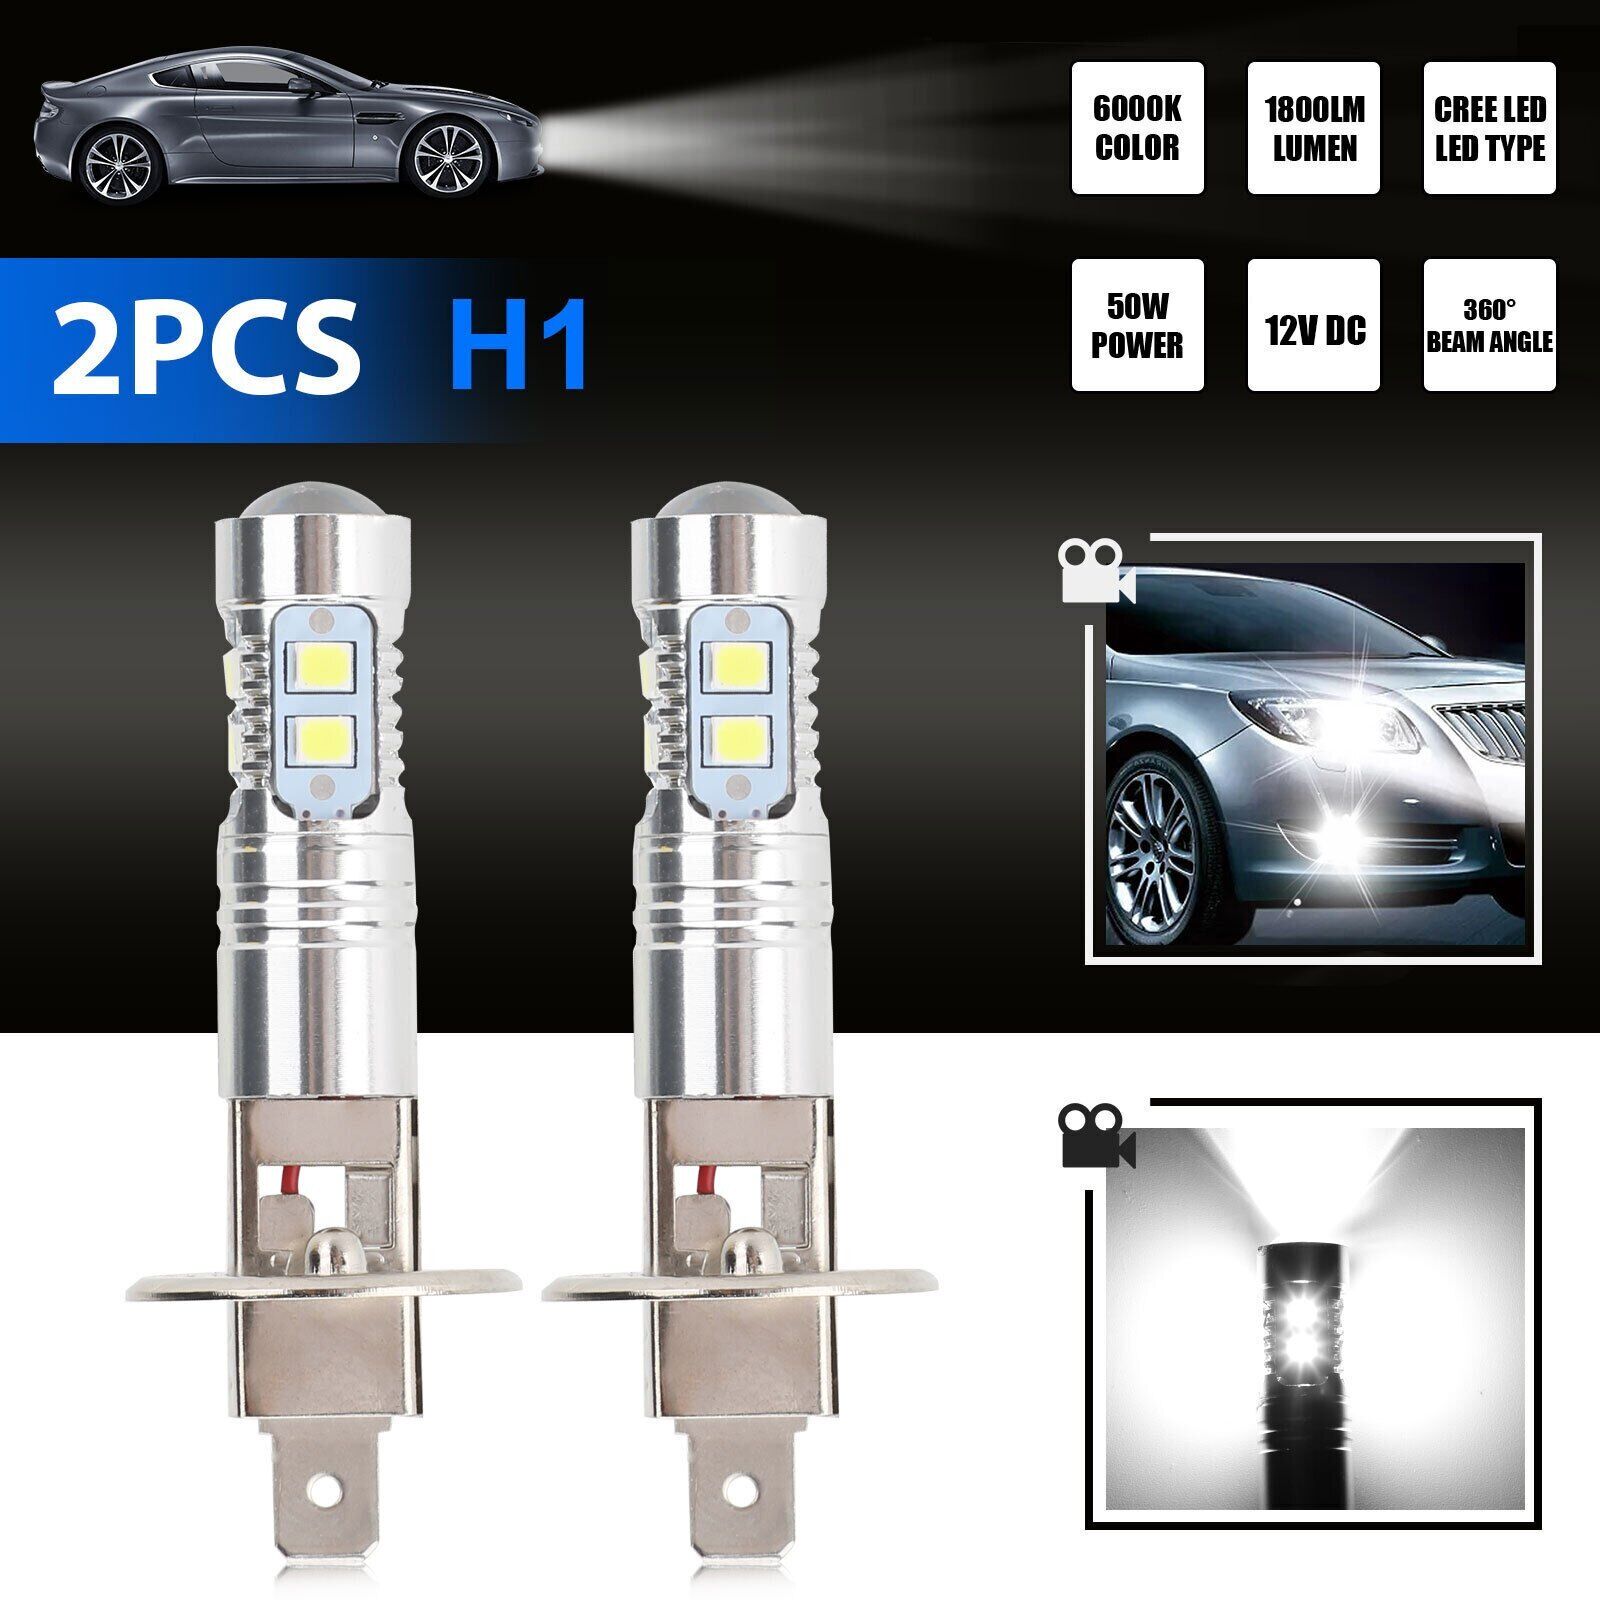 2Pcs Super Bright H1 LED Fog Driving Light Bulbs Conversion Kit DRL 6000K White